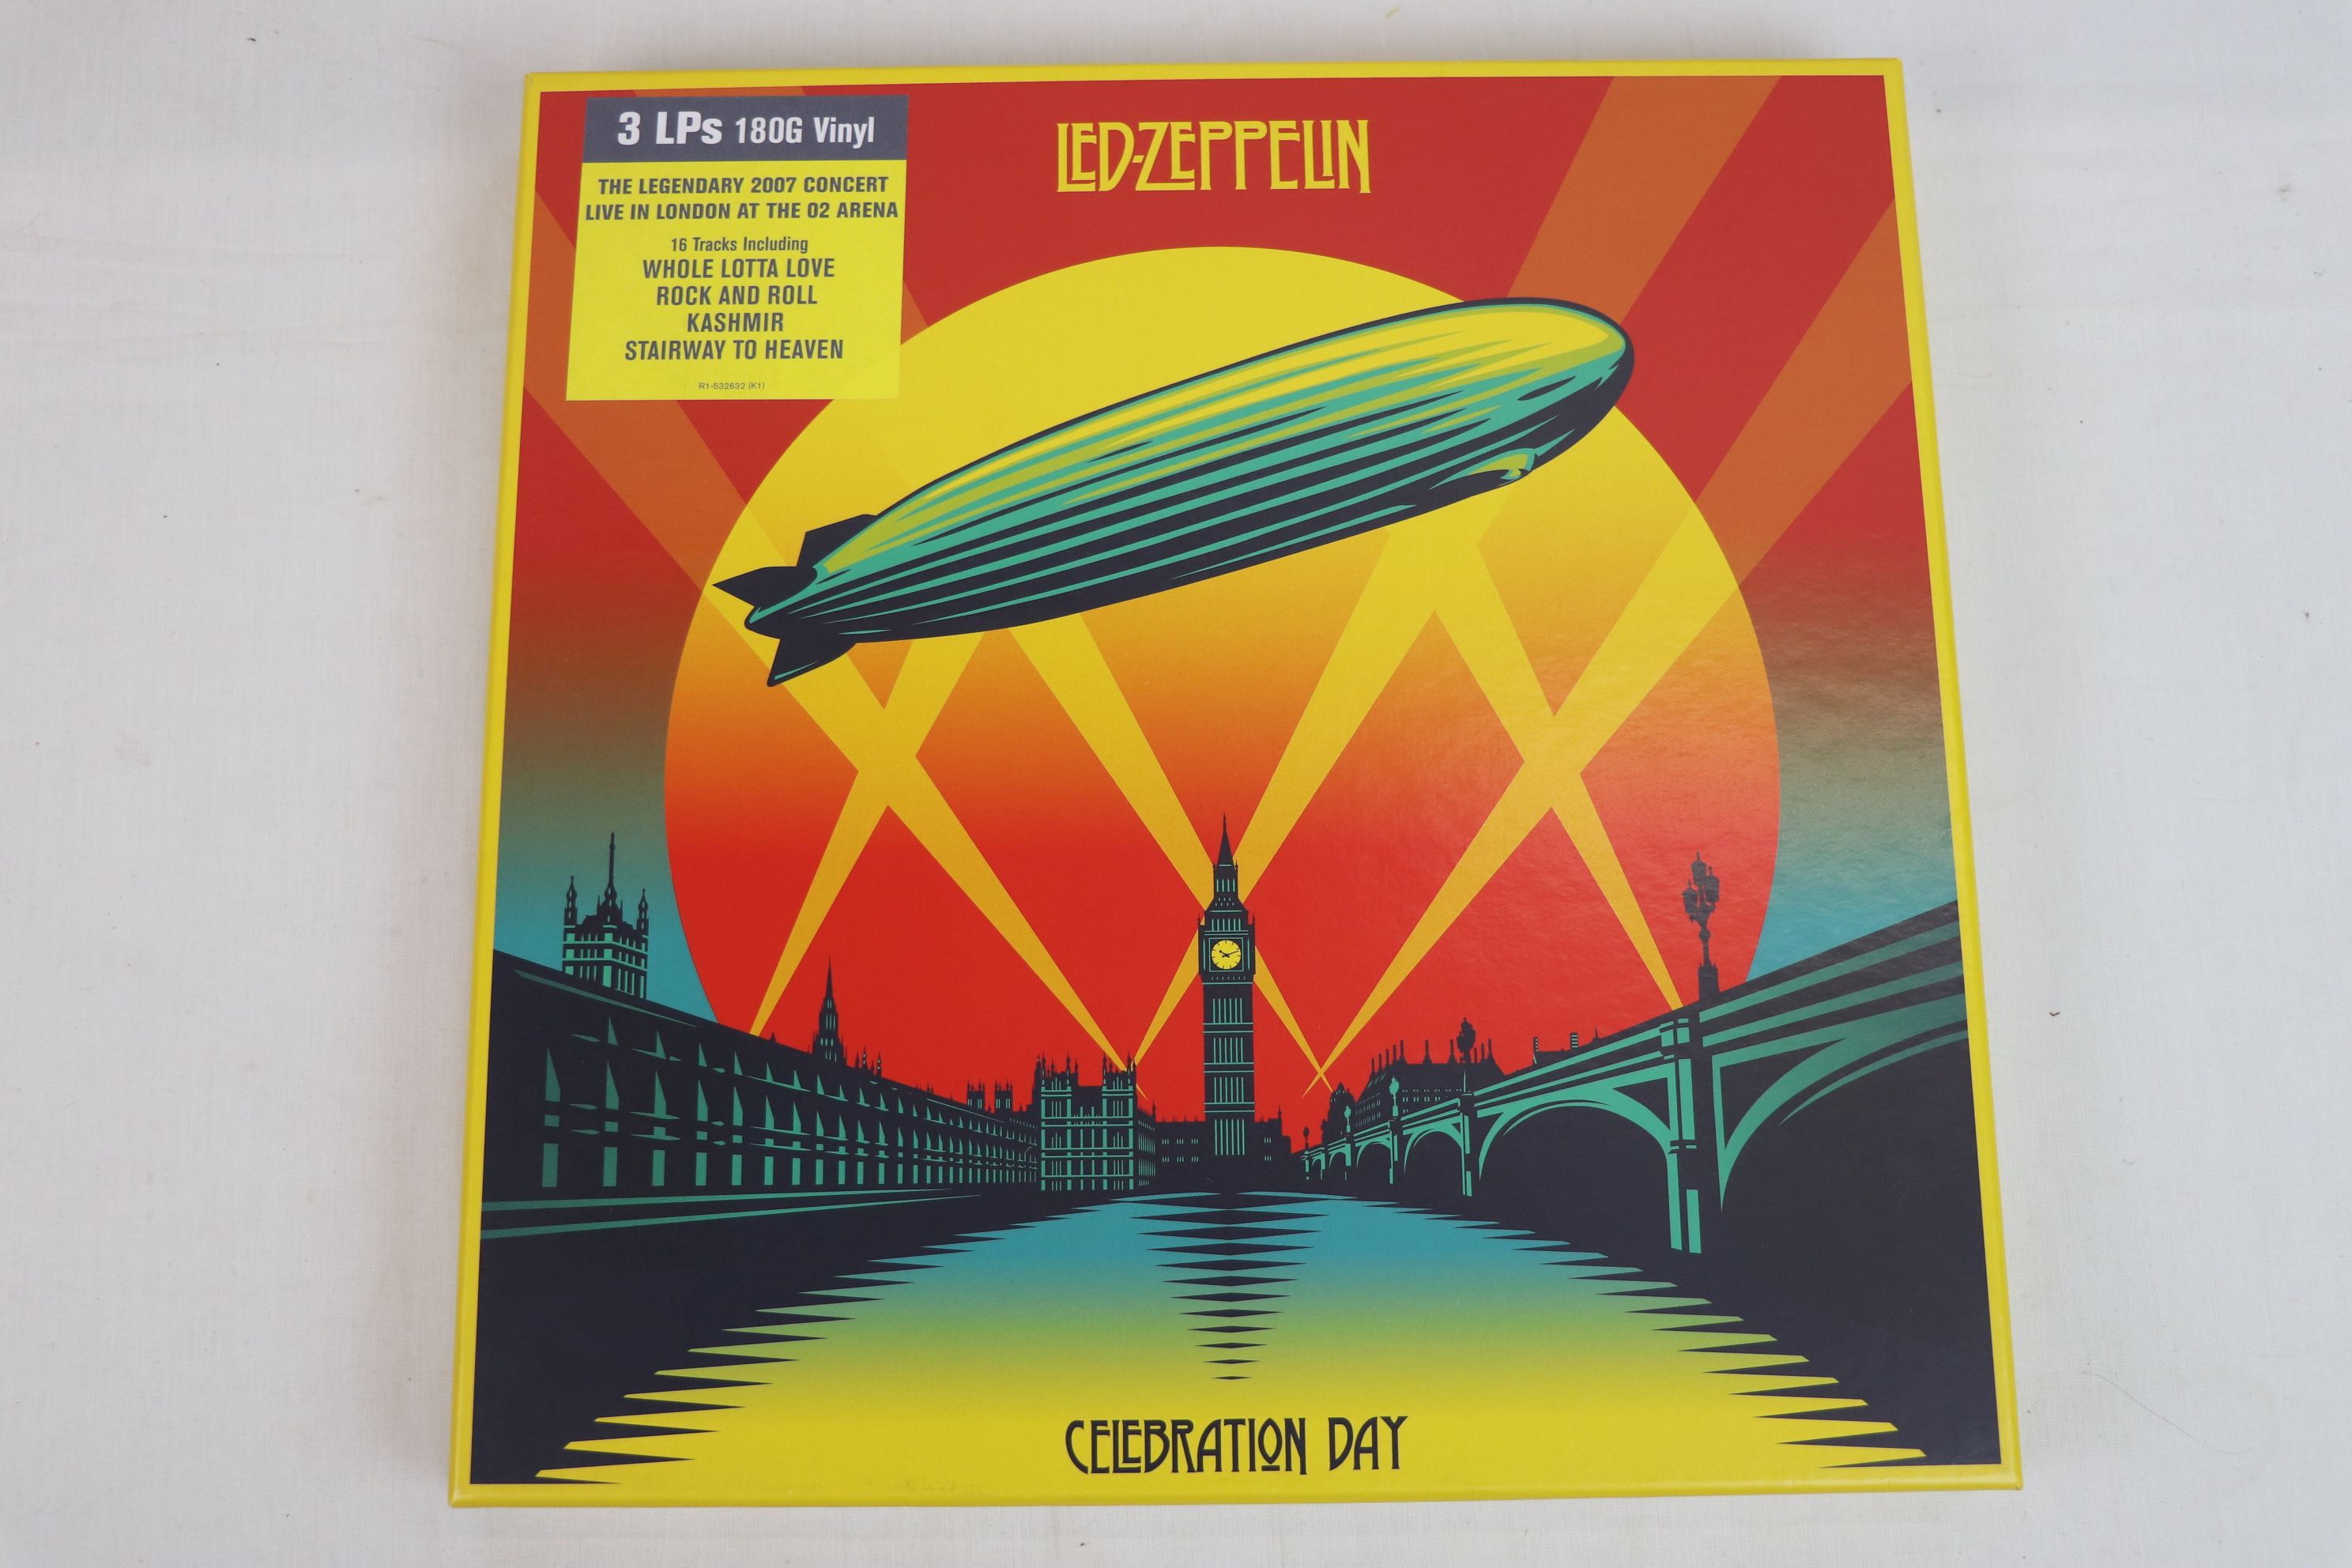 Vinyl - Led Zeppelin - Celebration Day 3 x Vinyl LP Box Set. The Legendary 2007 Concert Live In